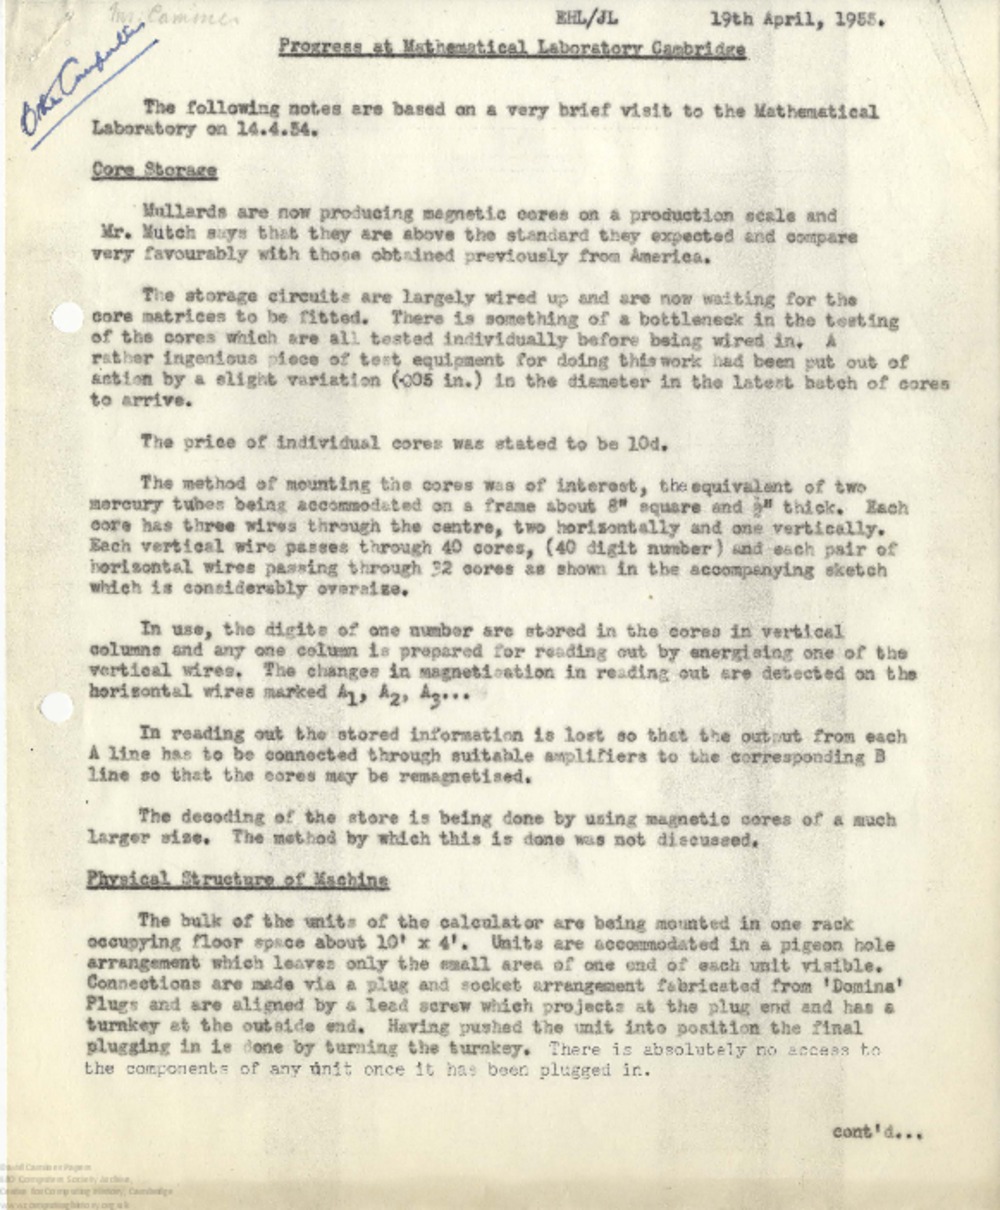 Article: 63099 Progress at Cambridge, Apr-June 1955